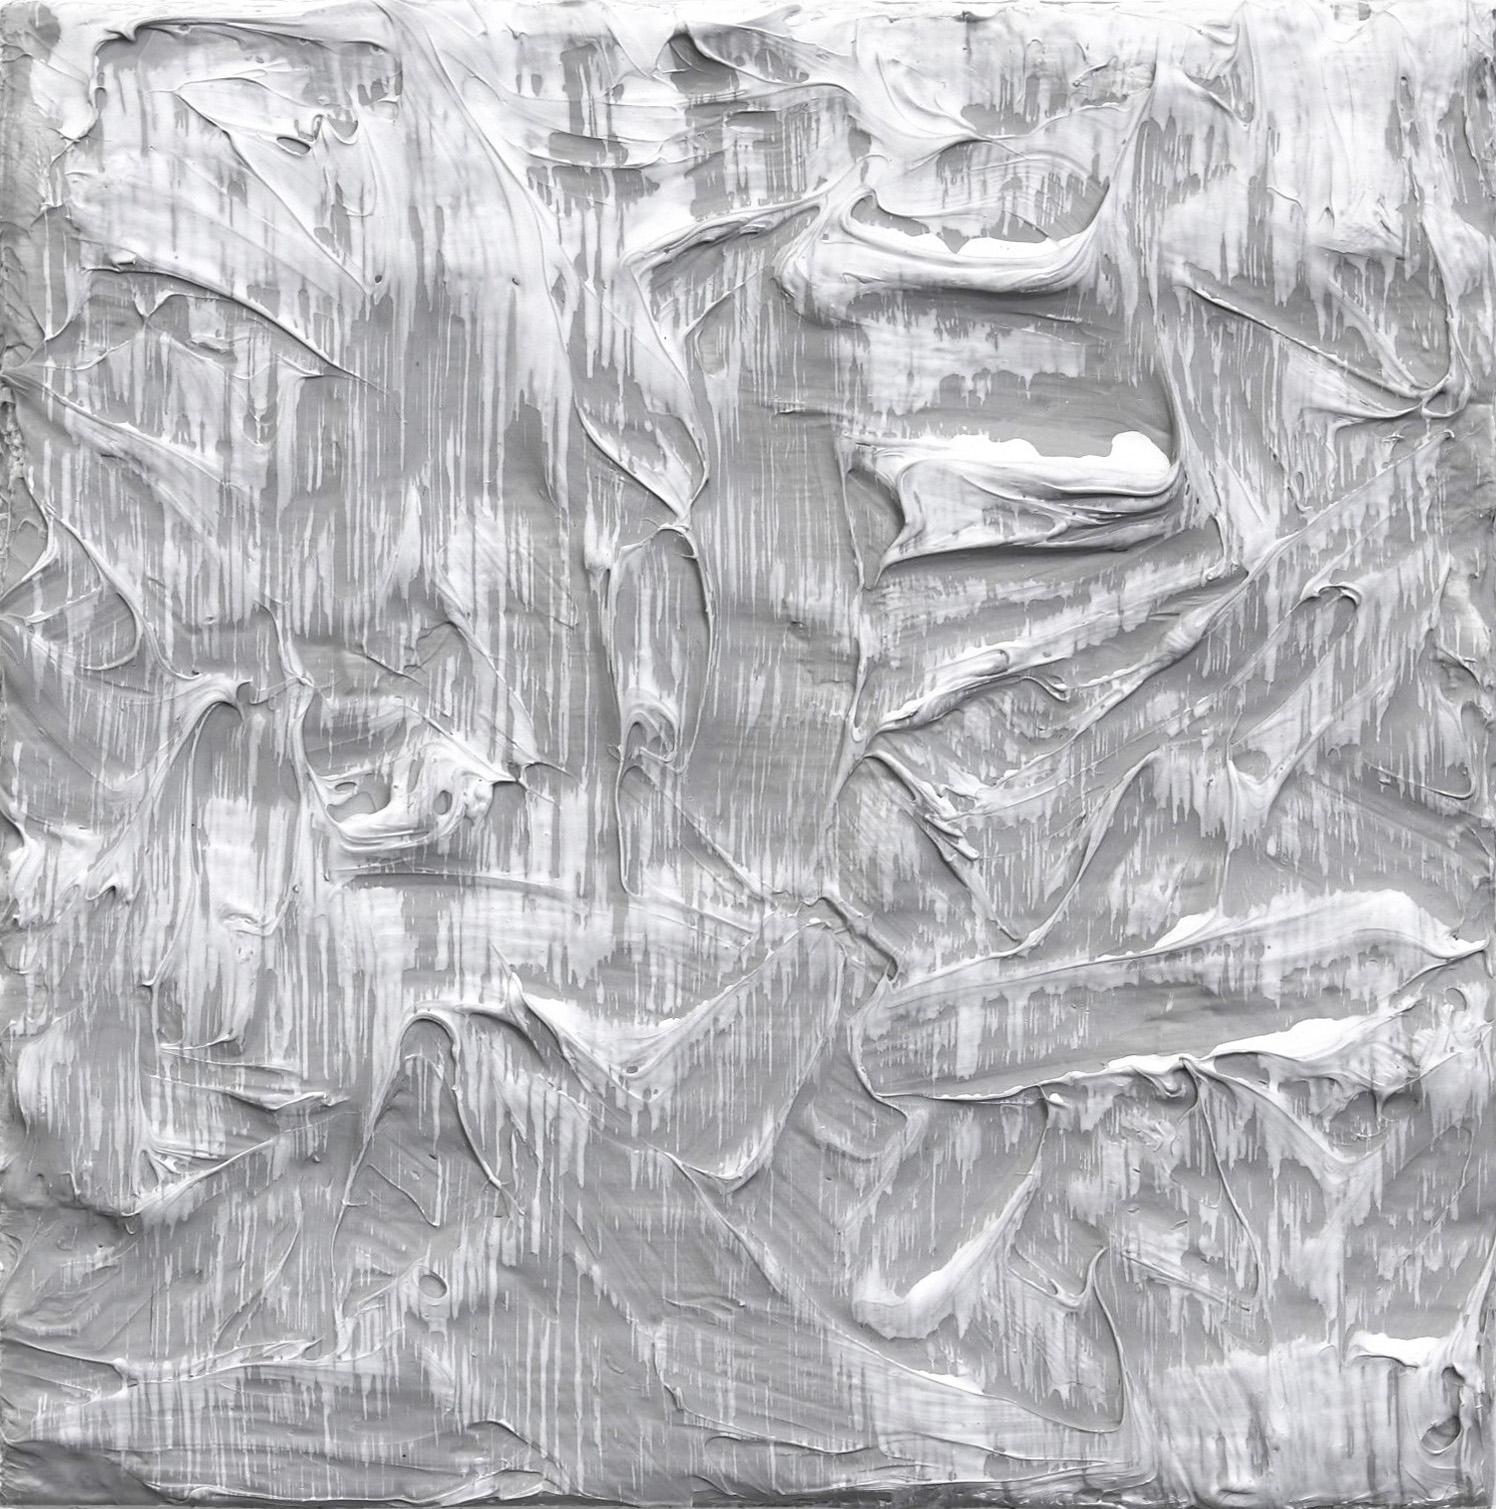 Abstract Painting Len Klikunas - Forces de la nature 5  - Œuvre d'art sculpturale abstraite, minimaliste et texturée sur toile